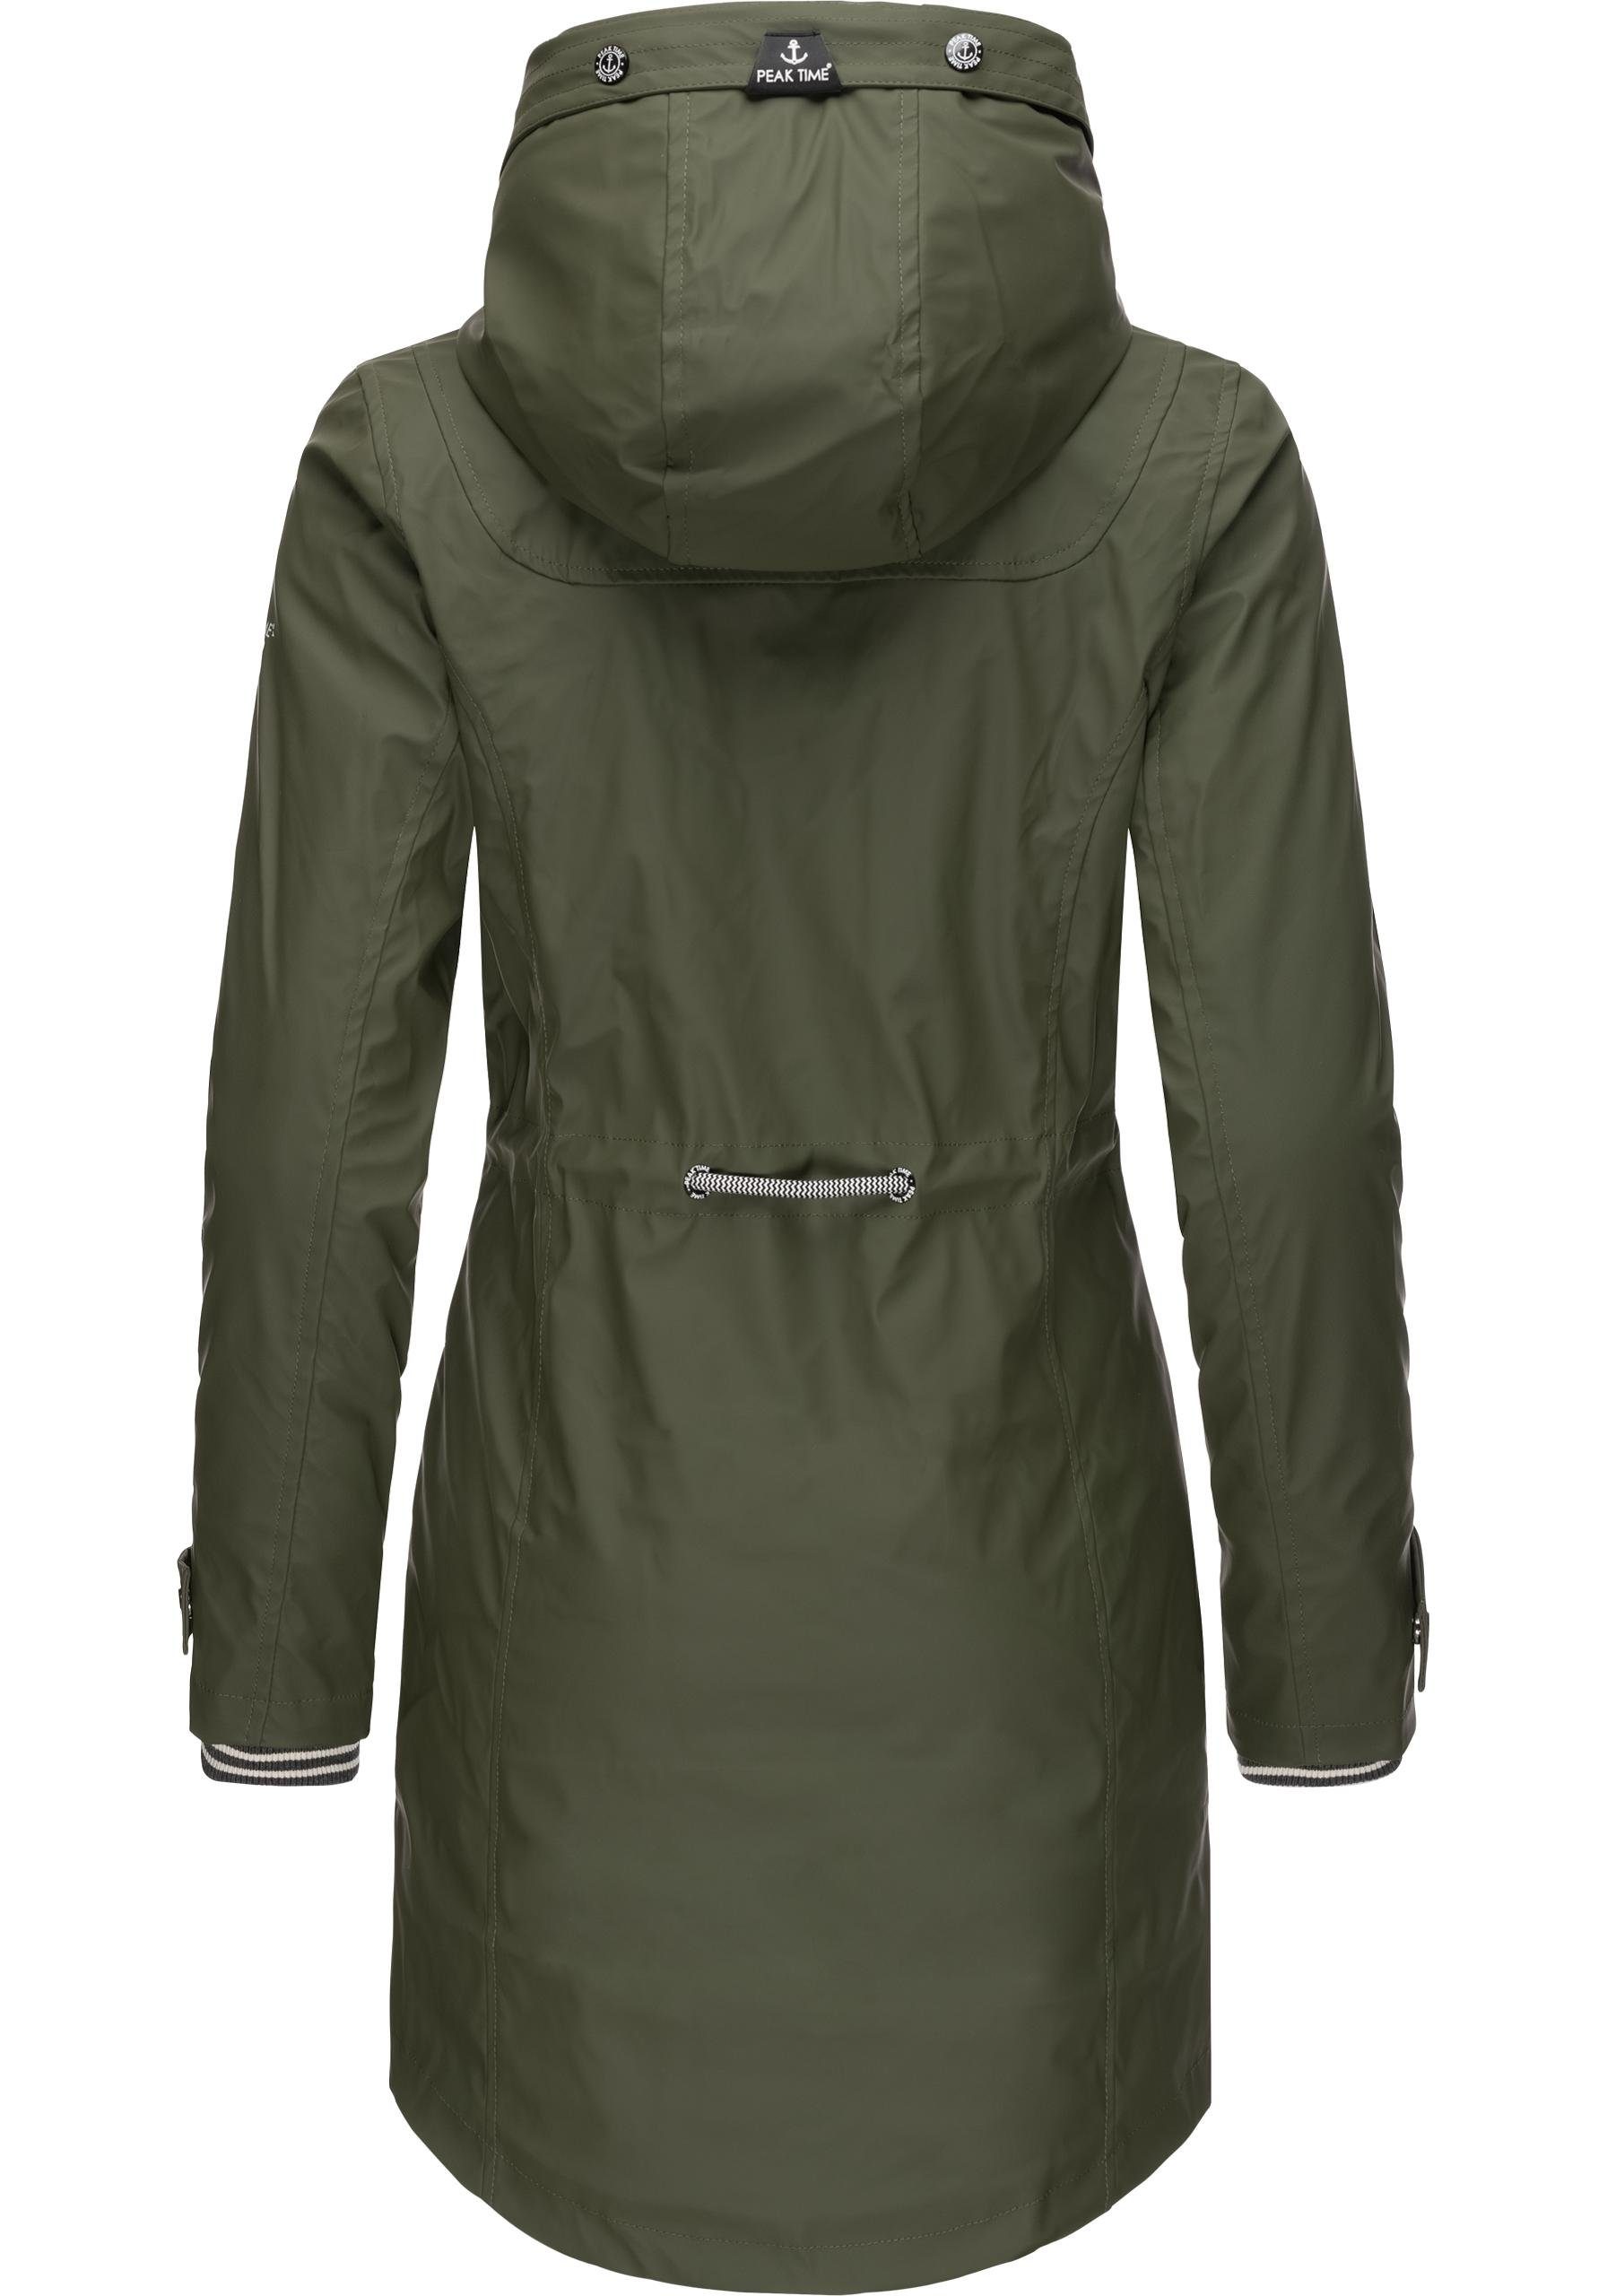 Damen taillierter TIME L60042 PEAK Regenmantel für Regenjacke olivgrün stylisch